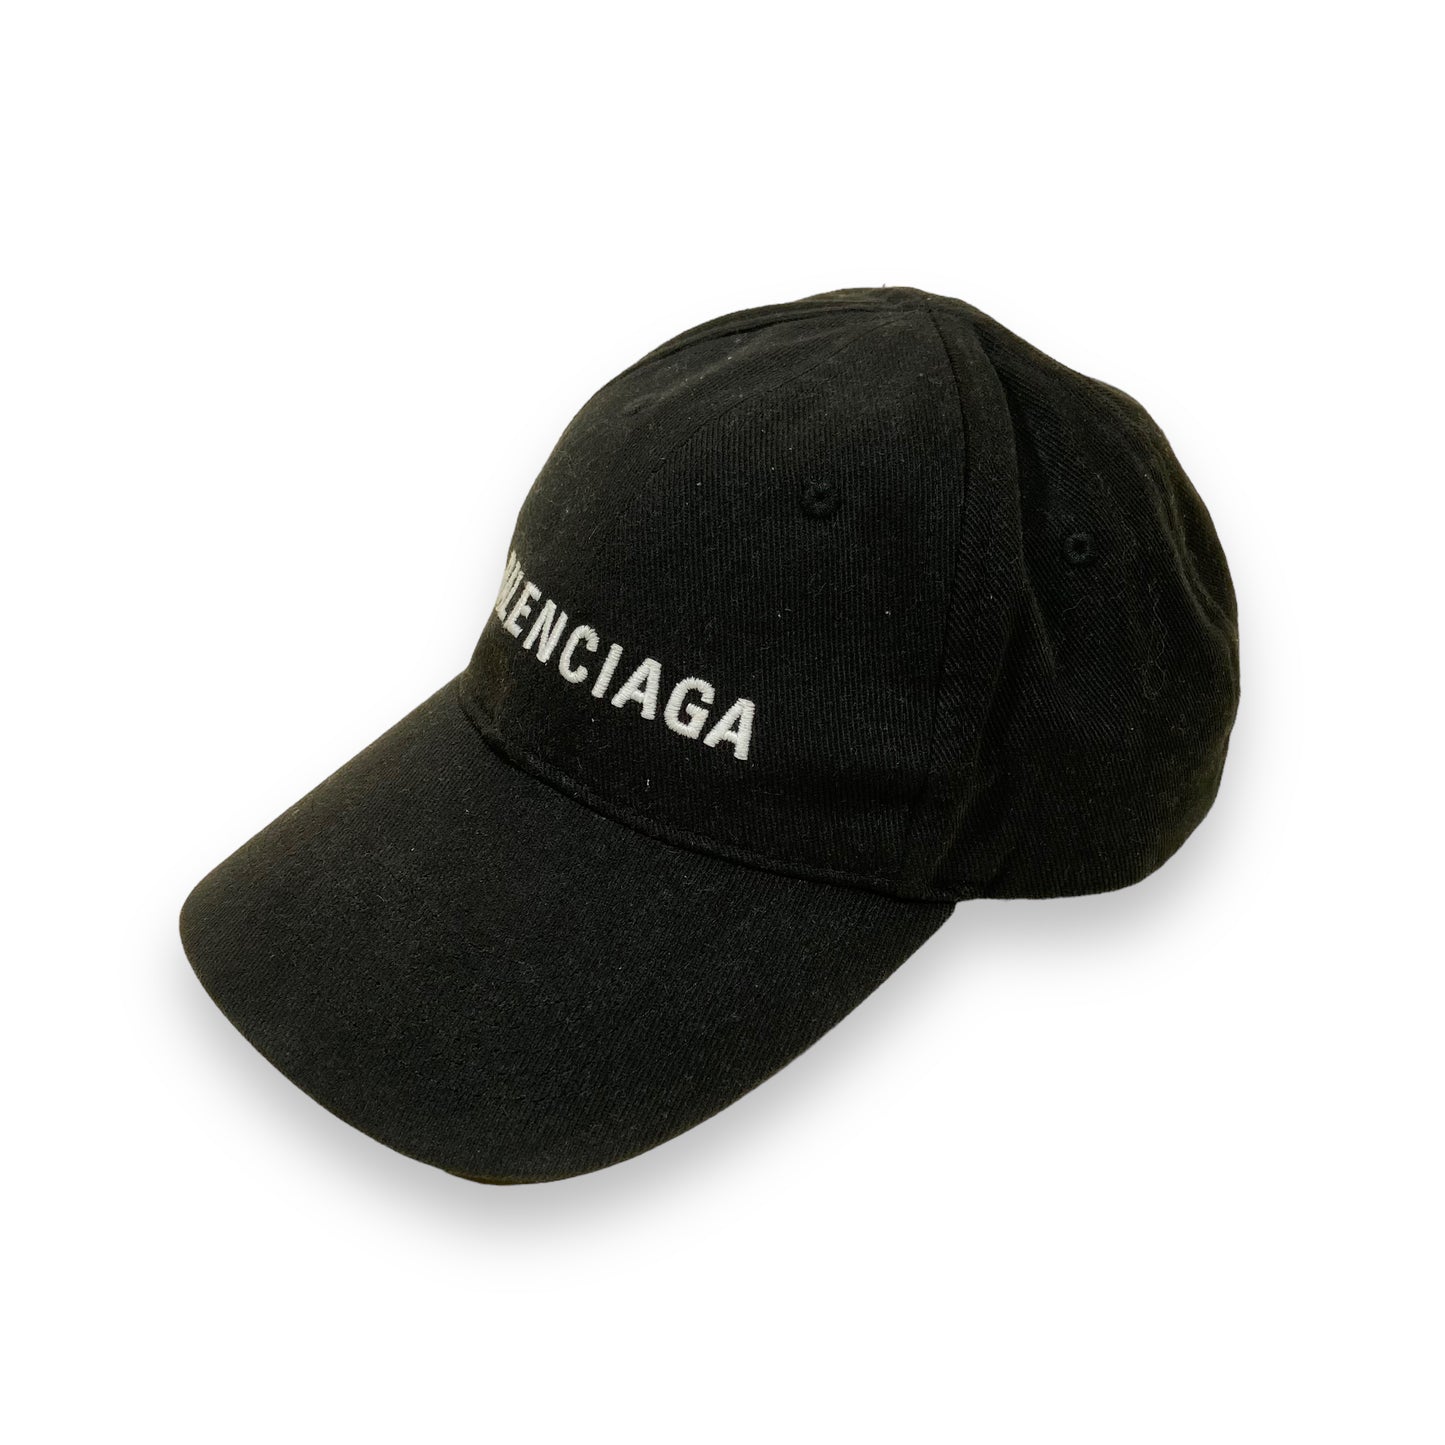 BALENCIAGA CAP BLACK